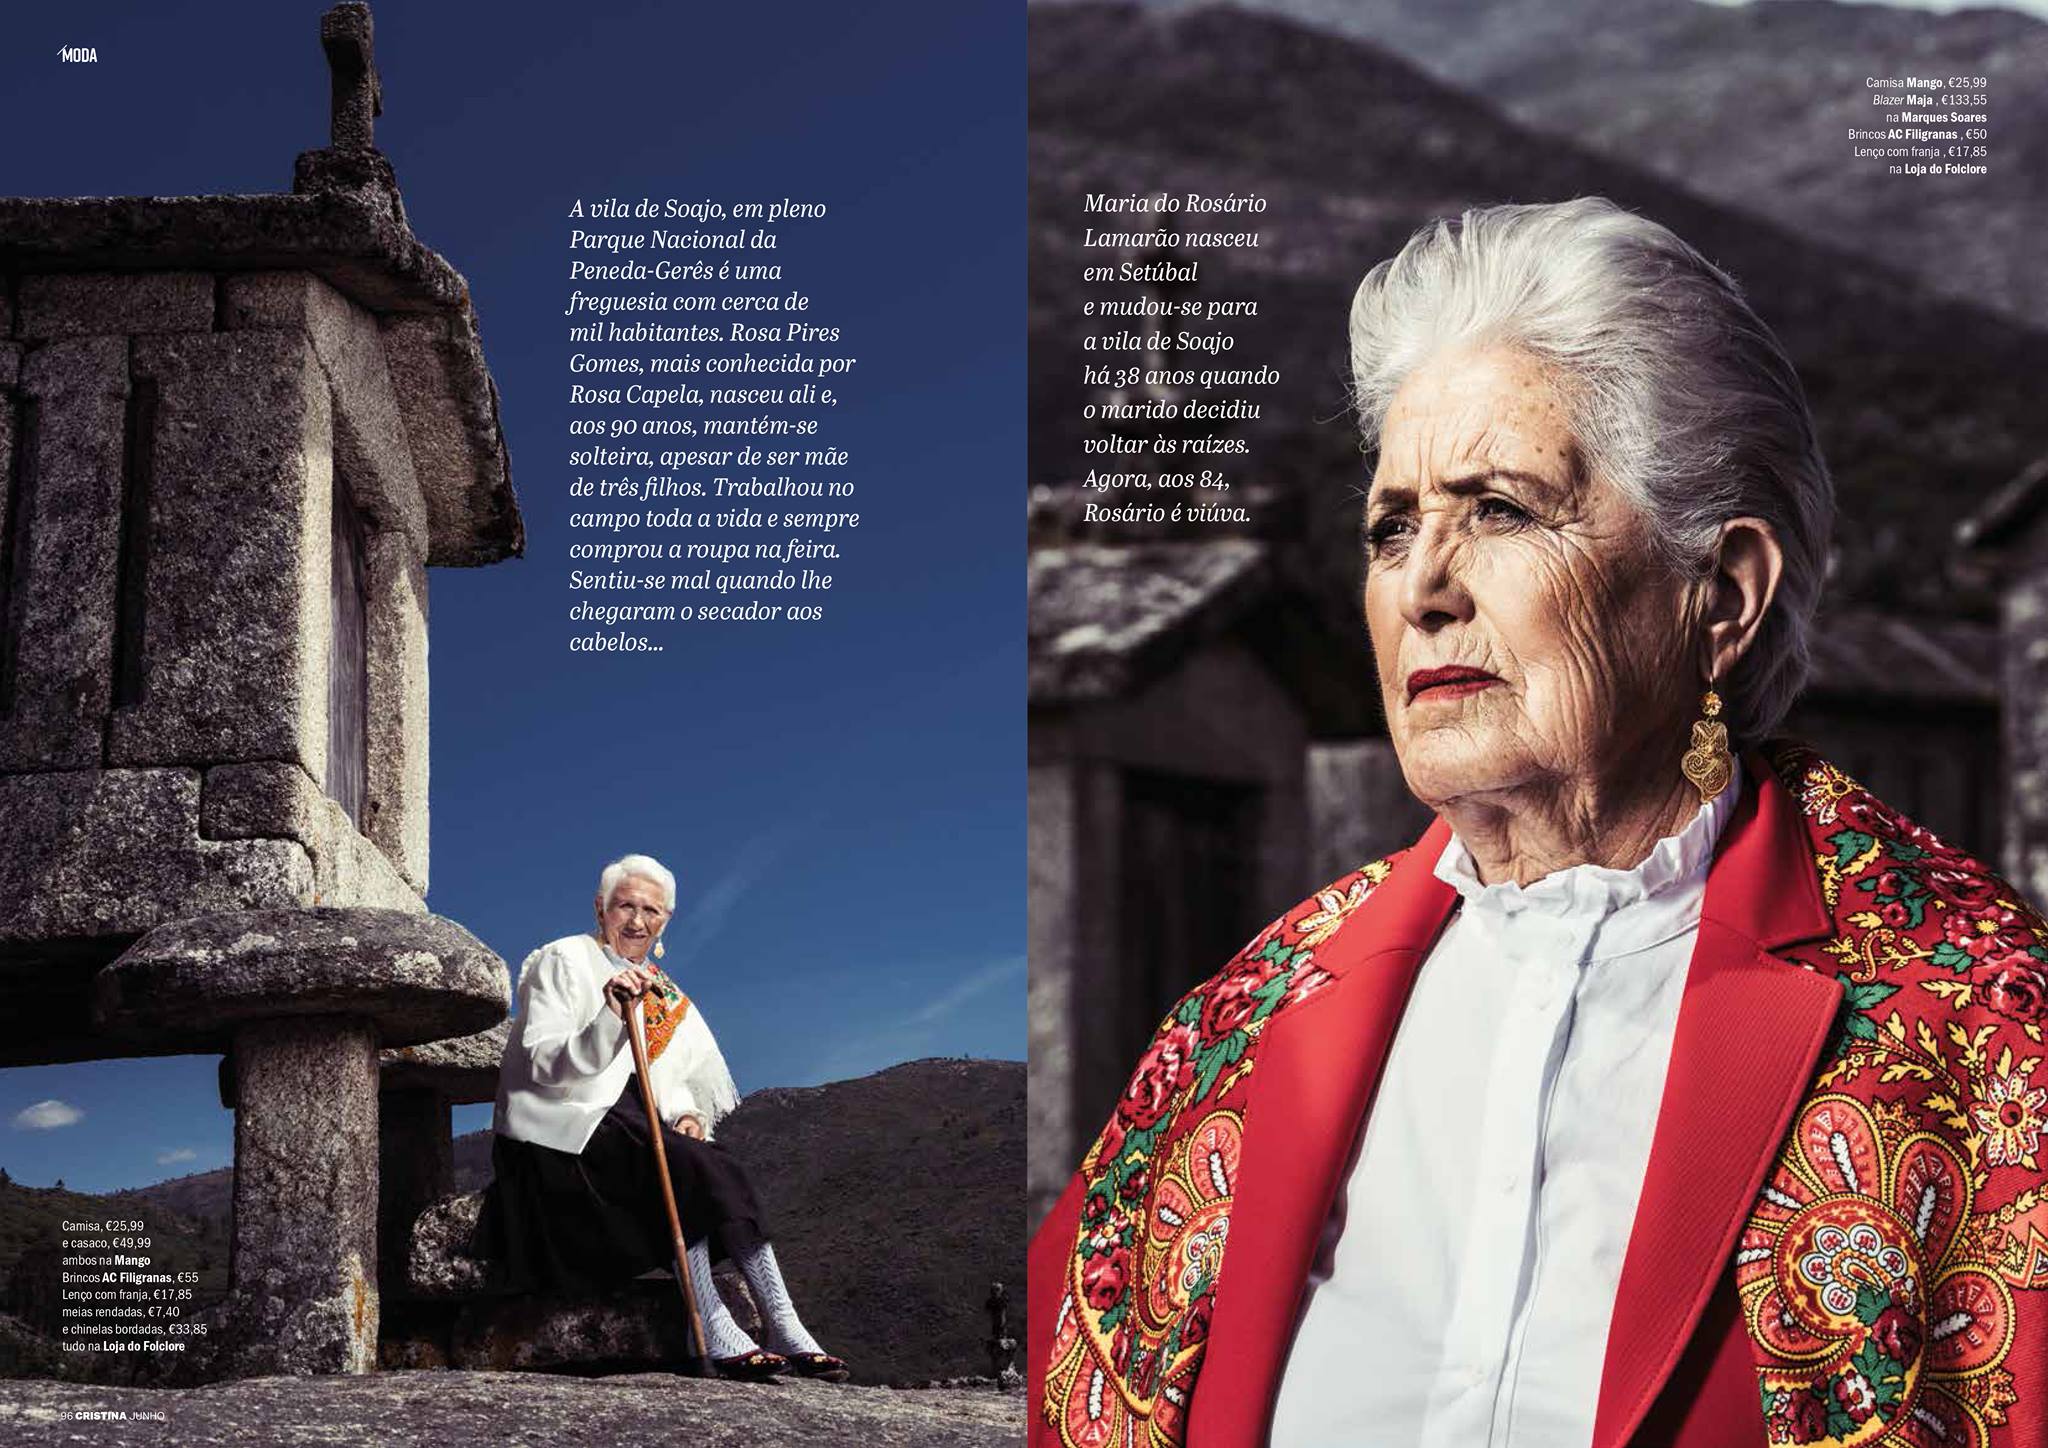 Galeria de Fotos - Gondomarense AC Filigranas na 3ª edição da Revista CRISTINA